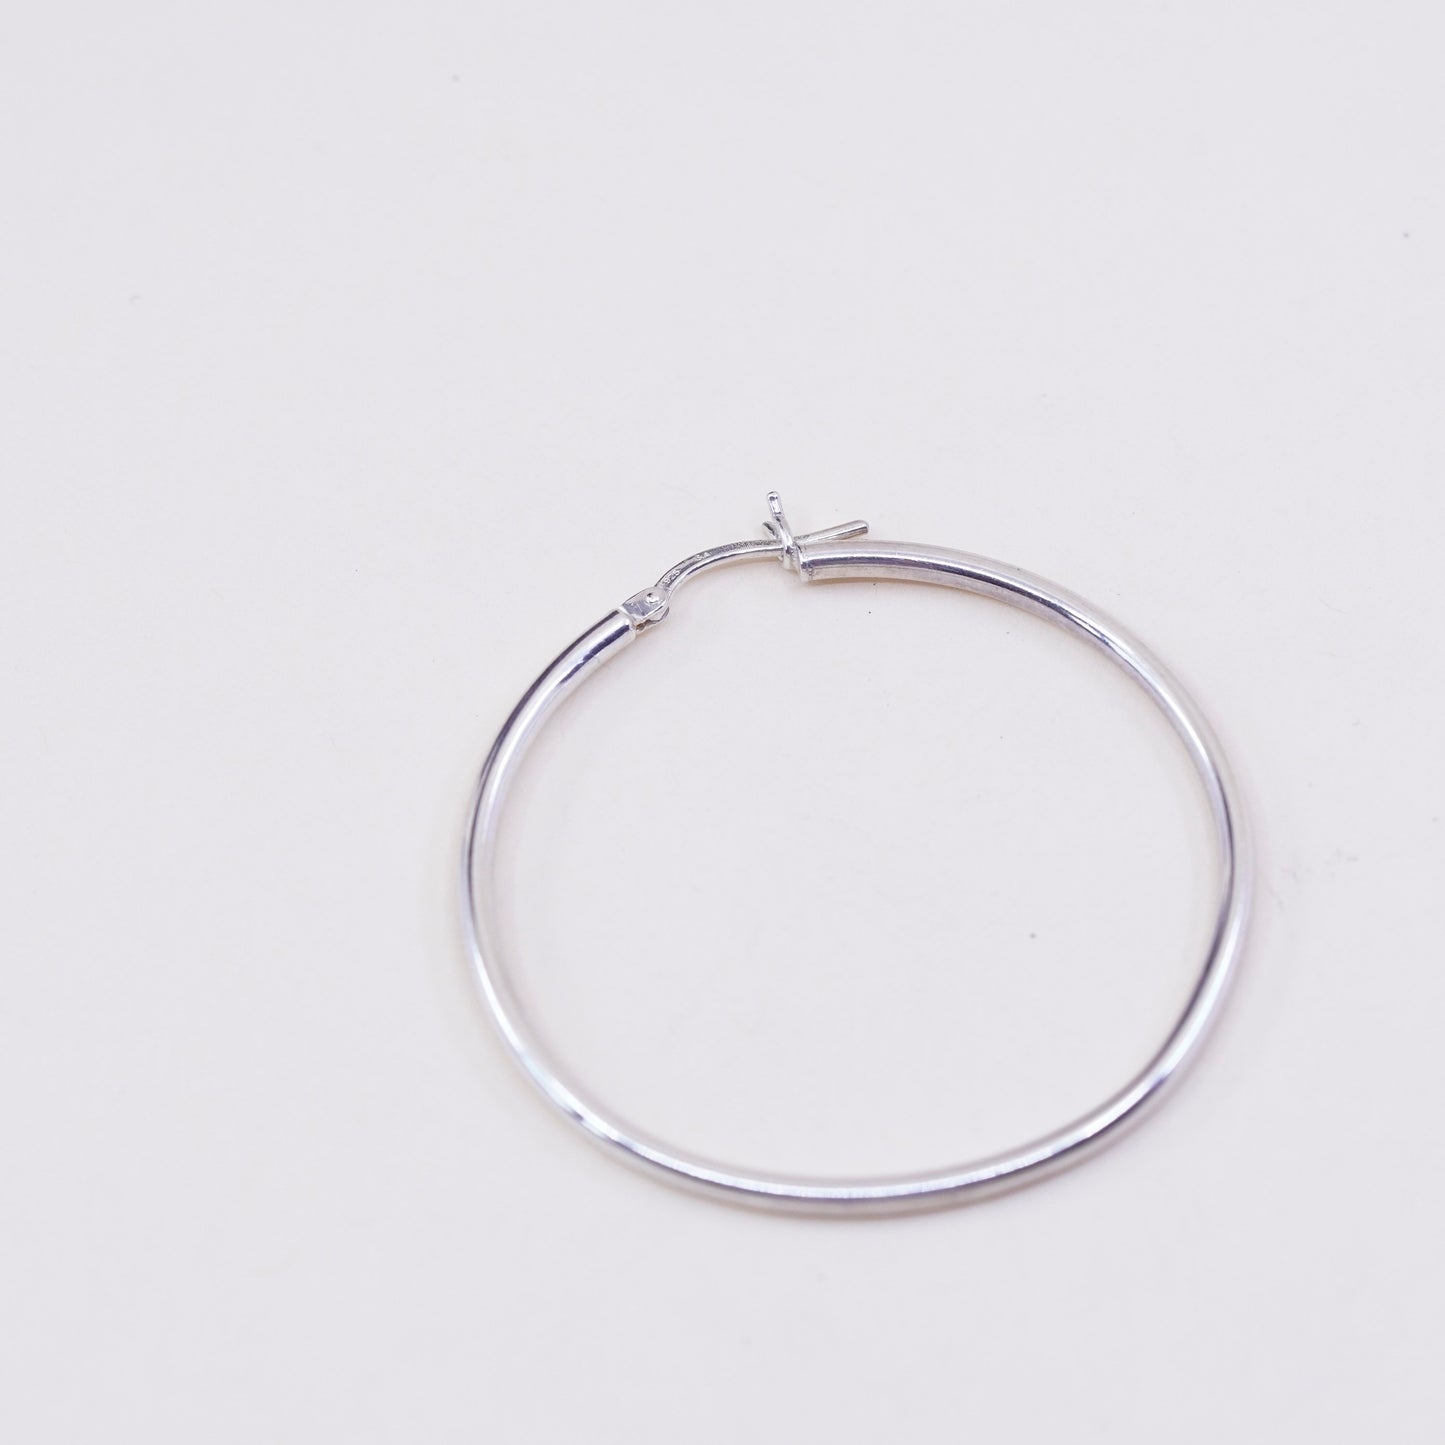 1.5” Vintage sterling silver loop earrings, fashion minimalist primitive hoops